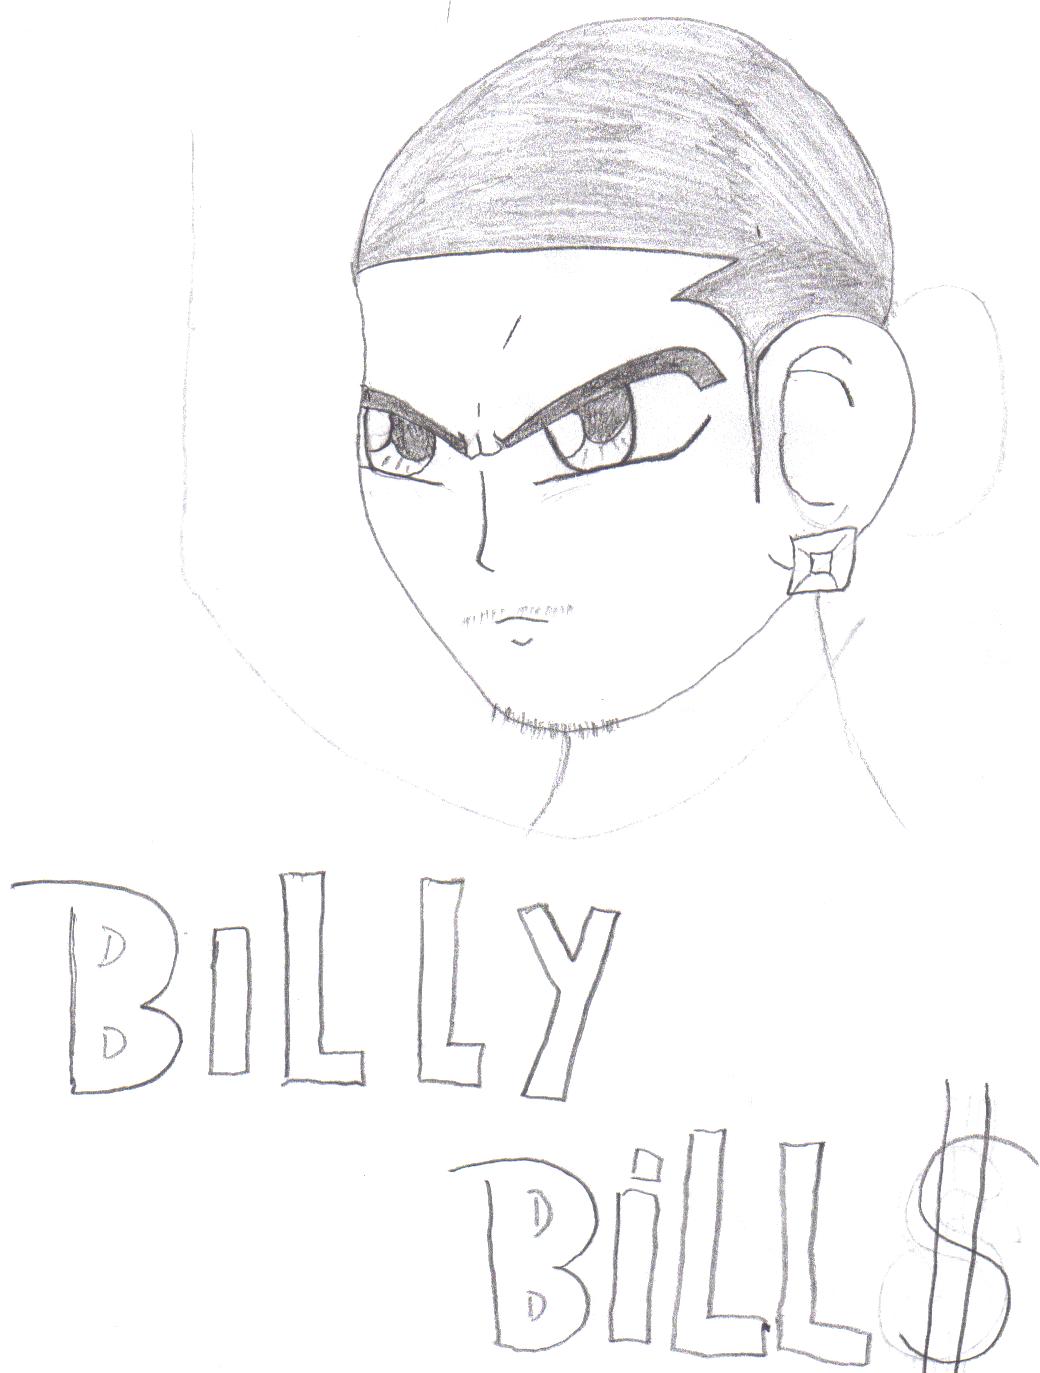 Billy Bill$ by jiggyd12